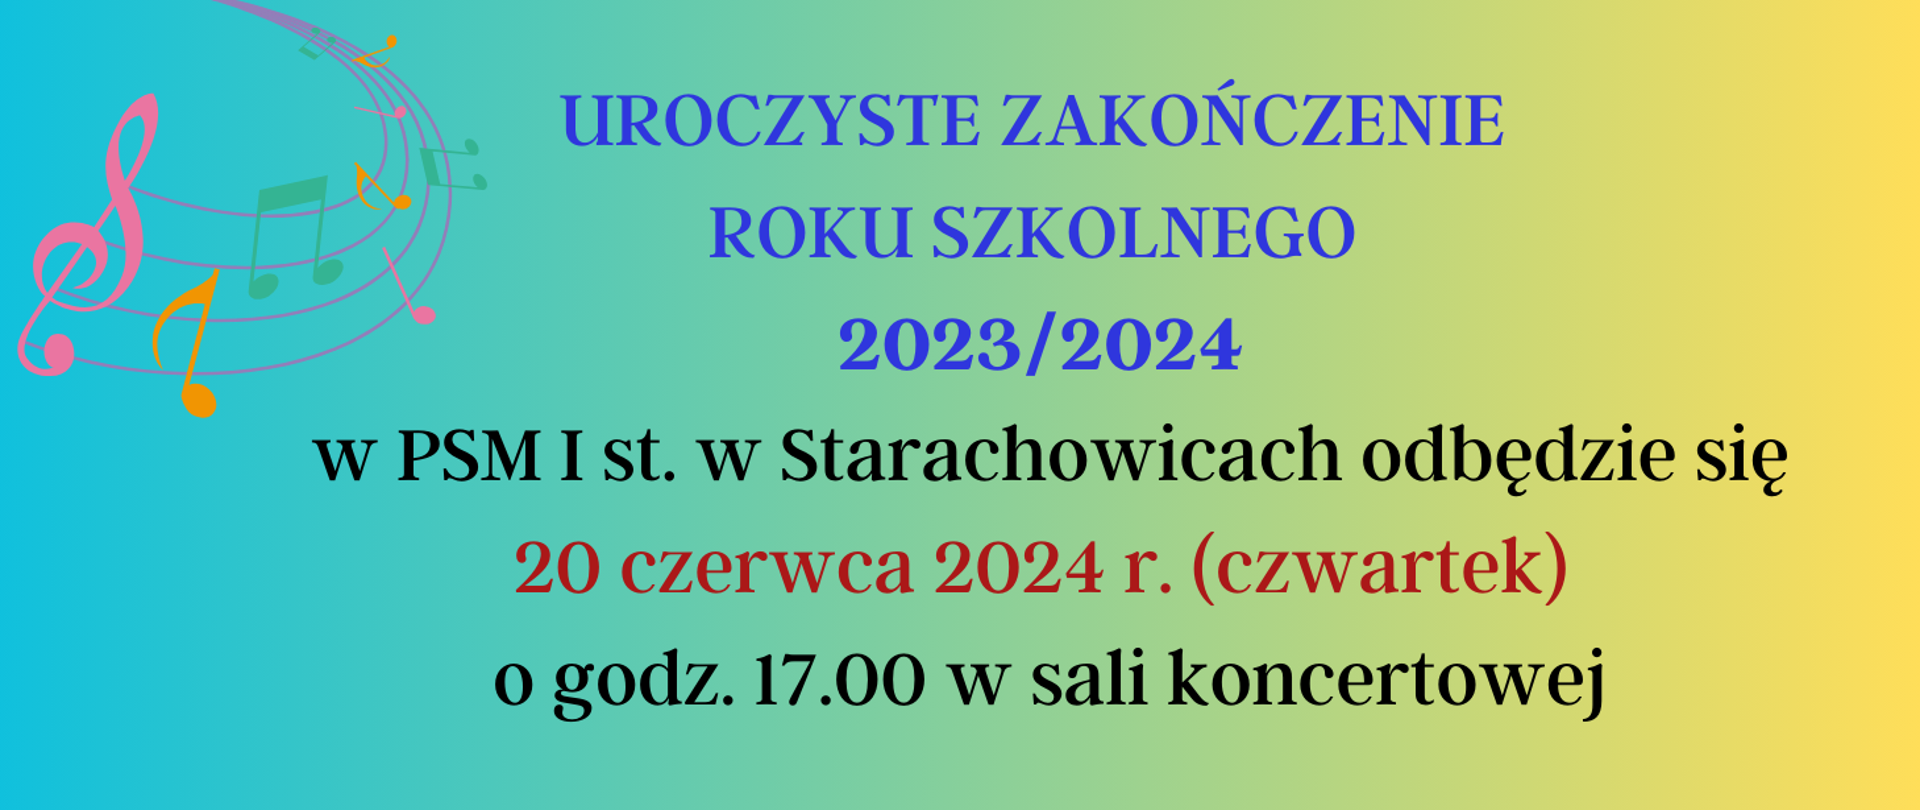 Plakat- Uroczyste Zakończenie Roku Szkolnego 2023/2024 w PSM I st. w Starachowicach odbędzie się 20 czerwca 2024r. ( czwartek) o godz. 17.00 w sali koncertowej -kolorowe tło z lewej grafika pięciolini z nutami.